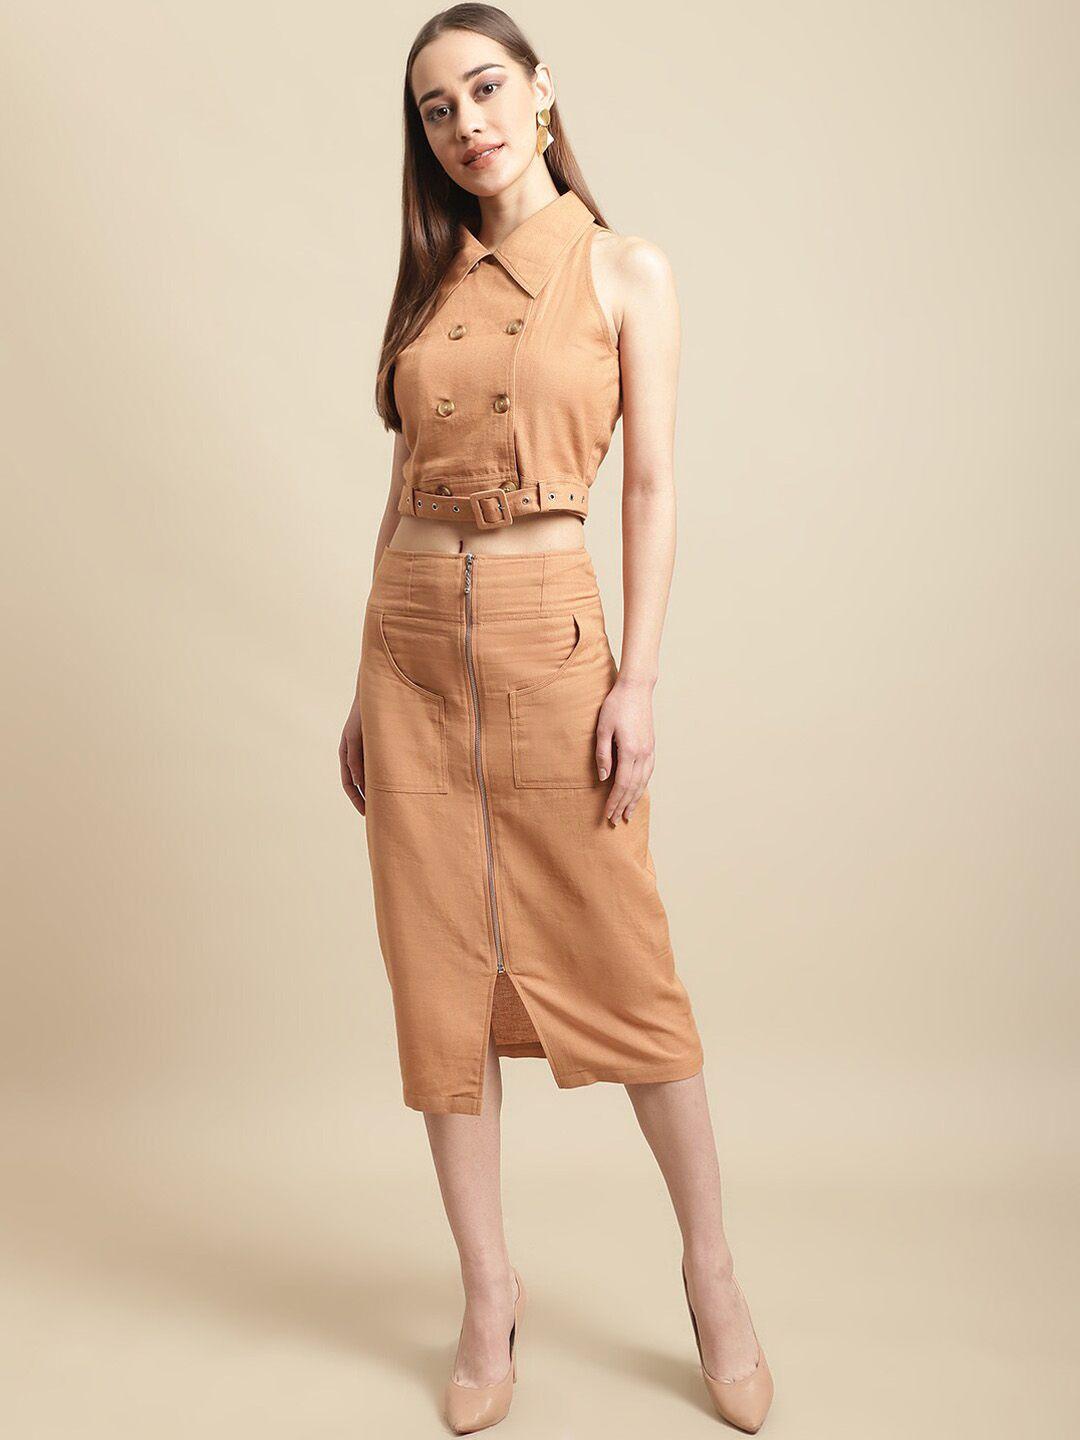 blanc9 women pure cotton crop top with zipper skirt